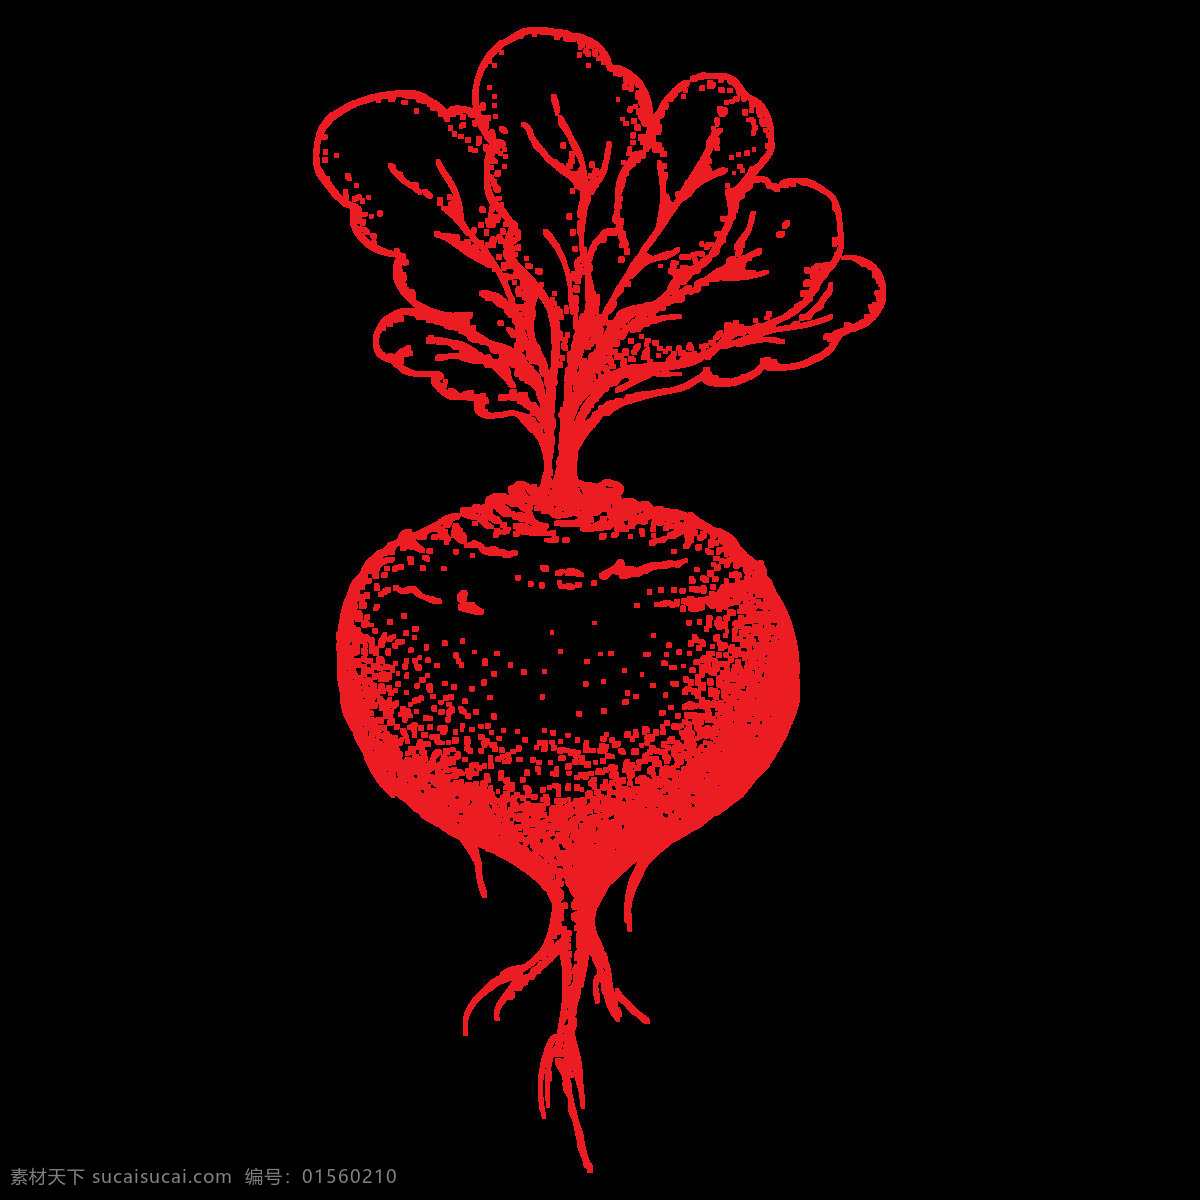 手绘 红萝卜 透明 蔬菜 png素材 逼真 卡通 可爱 免扣素材